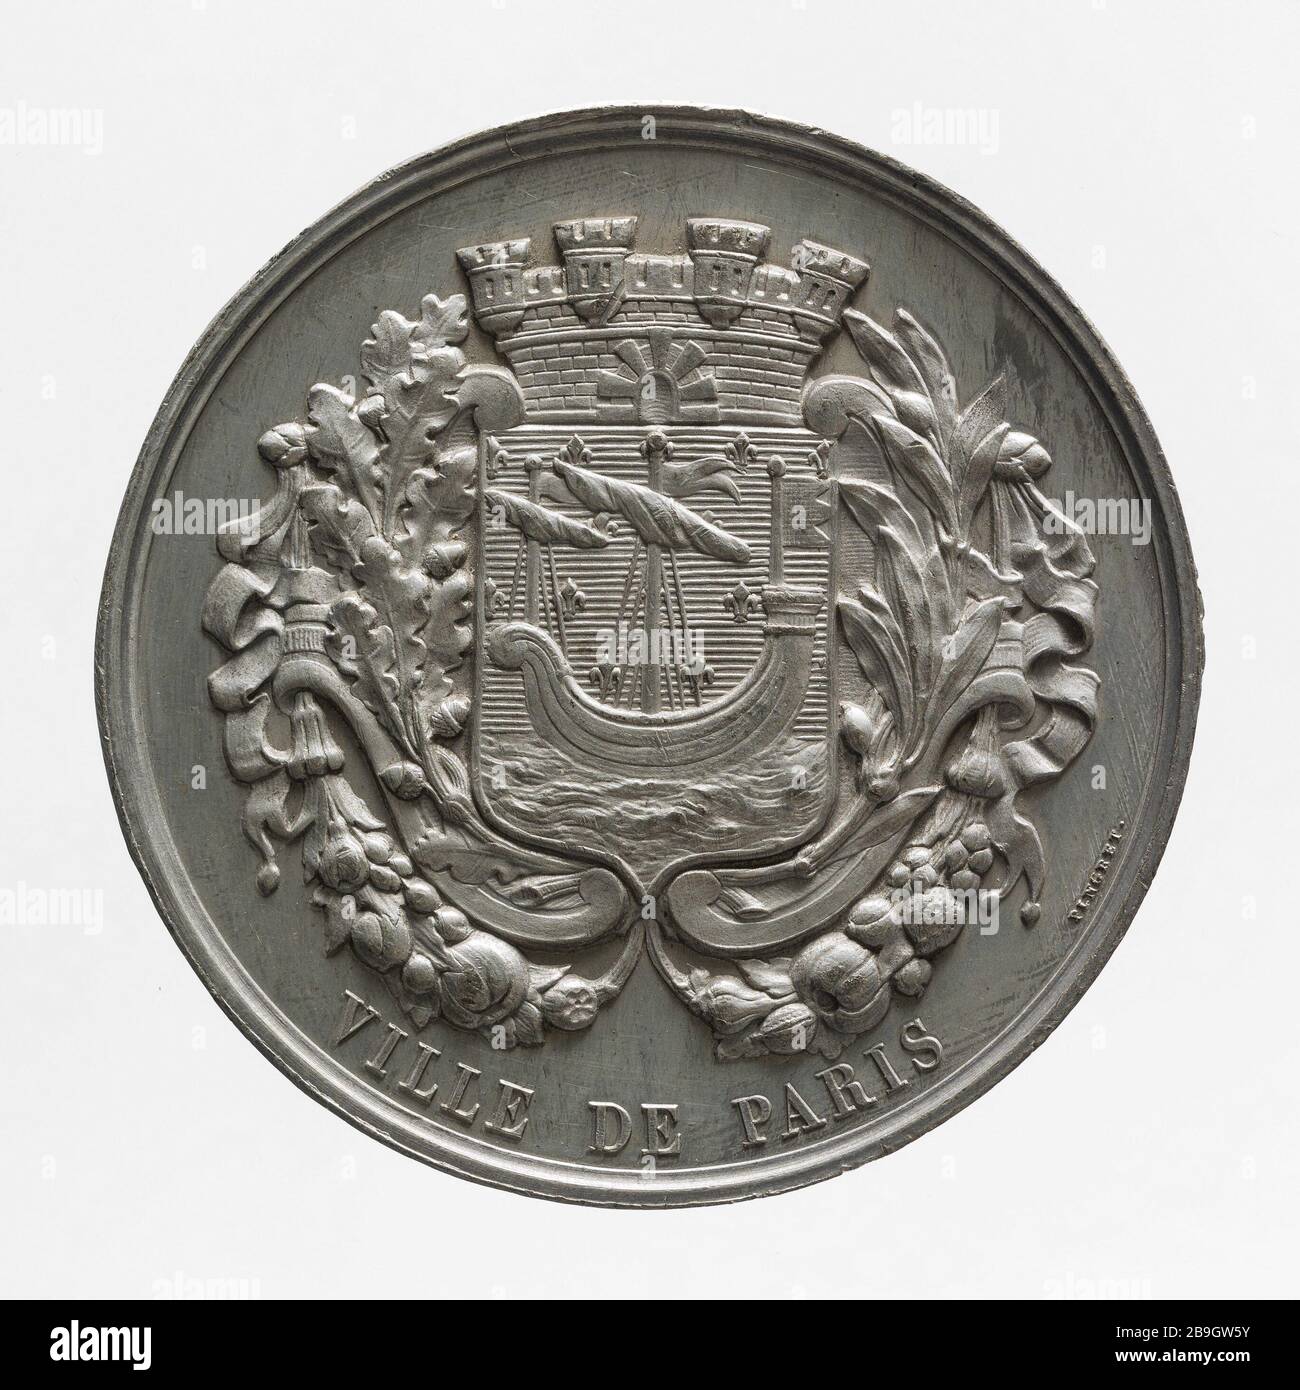 Waffenmedaille der Stadt Paris Joseph Arnold Pingret (1798-1862). Médaille aux armes de la Ville de Paris. Etain. Paris, musée Carnavalet. Stockfoto